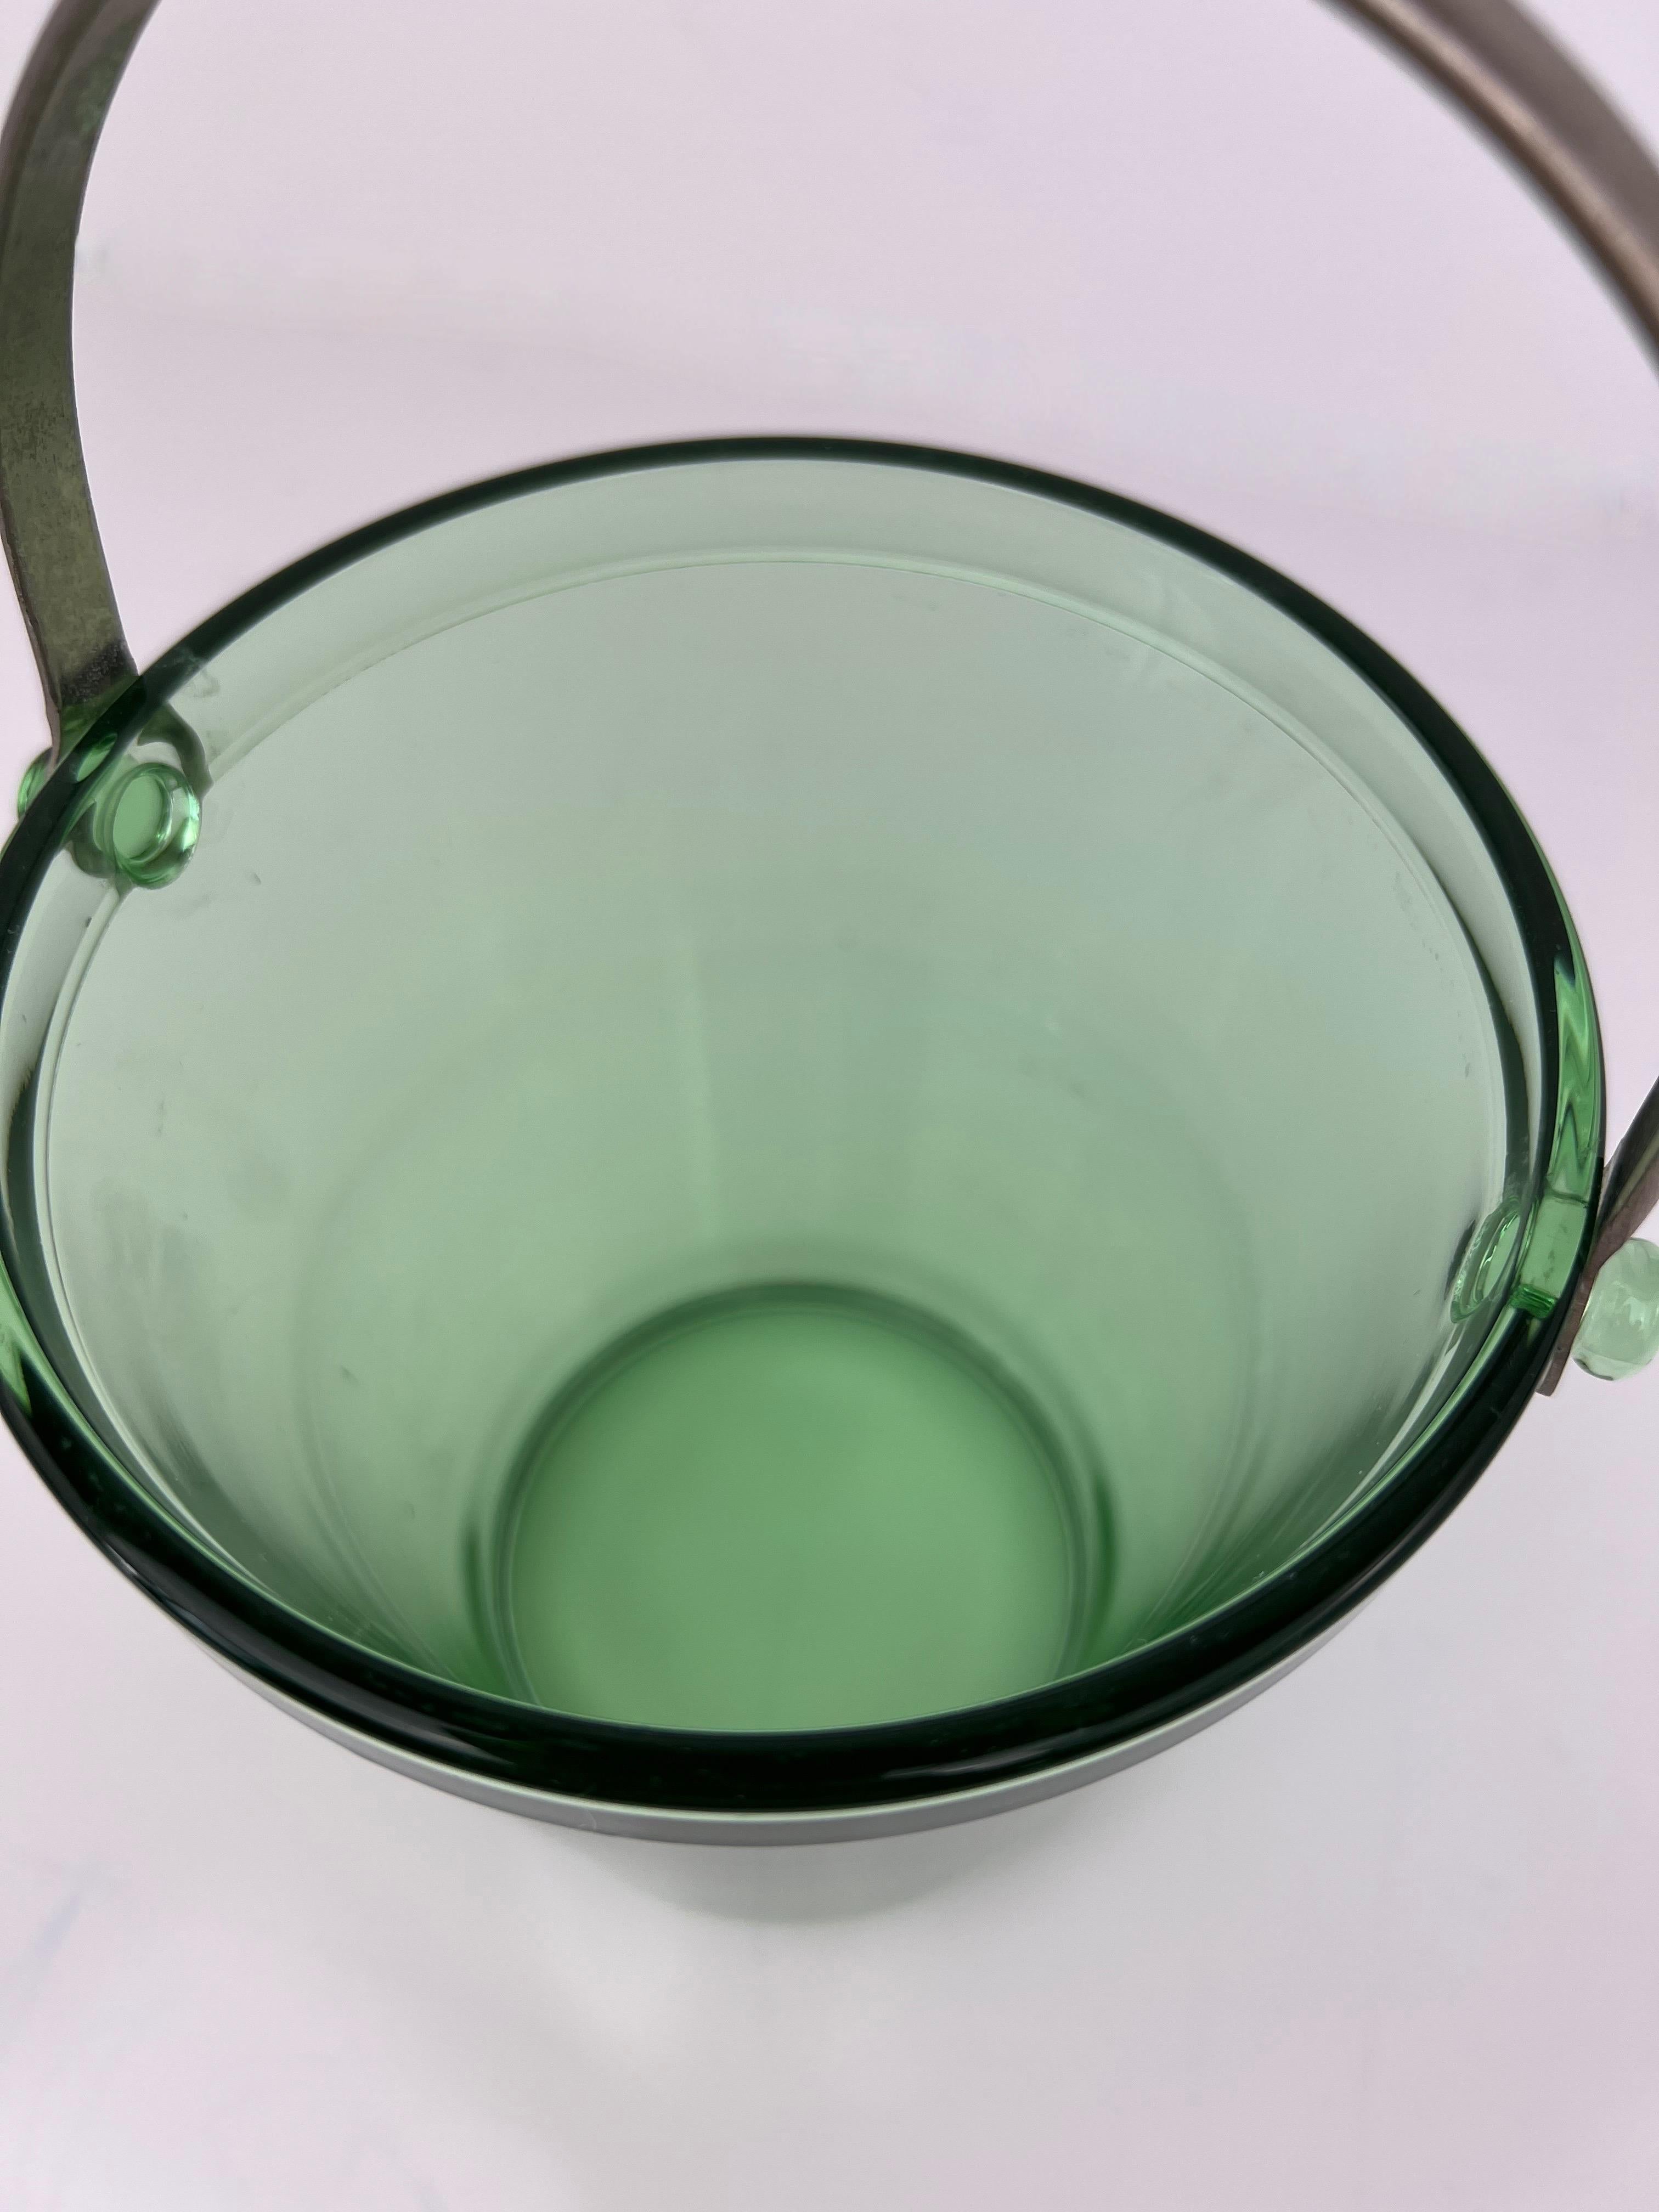 Mid Century Green Glass Ice Bucket mit Edelstahlgriff. Kleine Größe, perfekt für einen Barwagen.

5 15/16